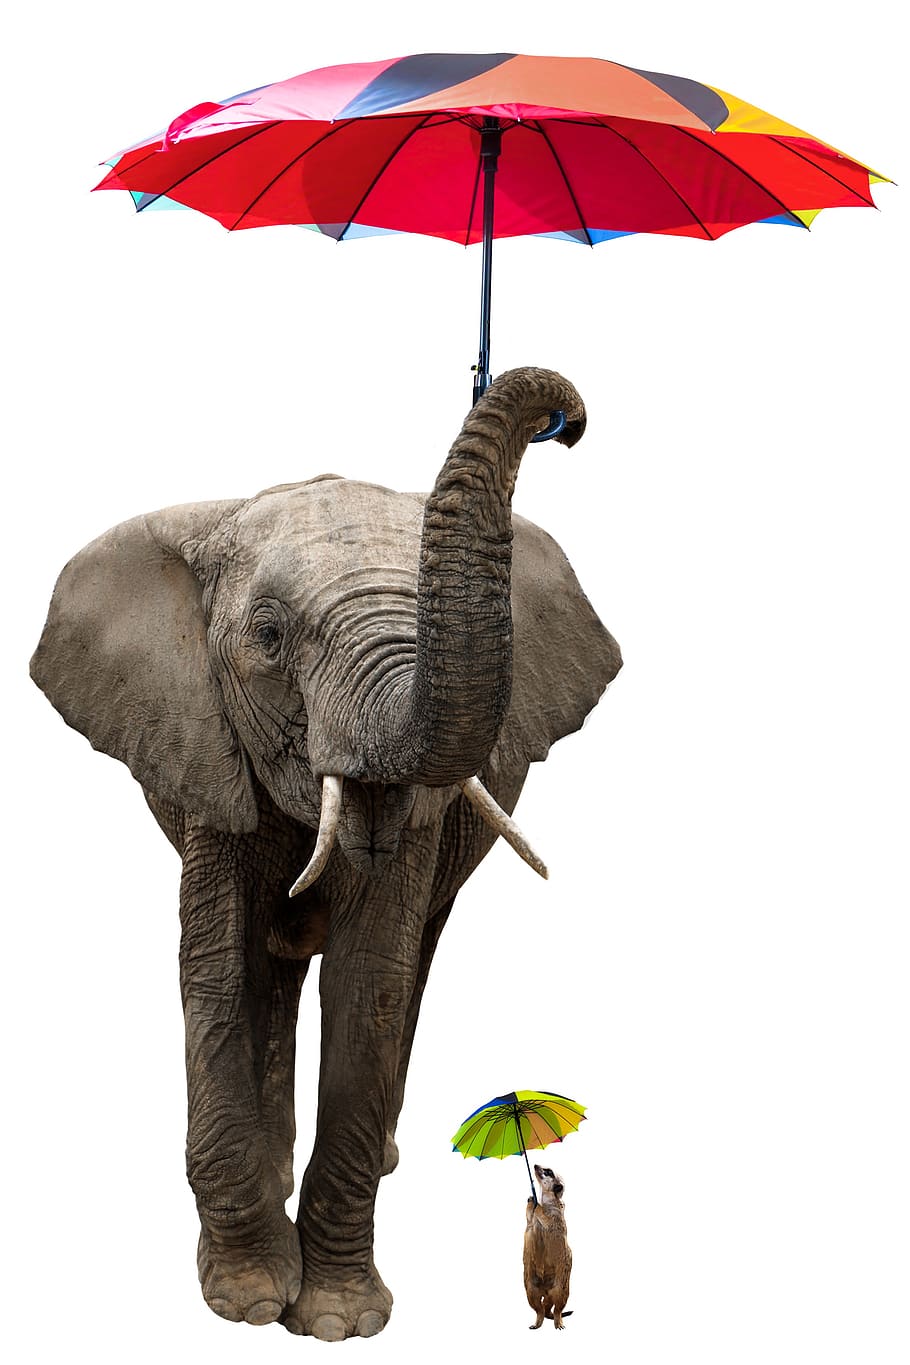 animales, elefante, suricata, paquidermo, paraguas, sombrilla, aislado, protección solar, protección contra la lluvia, protección